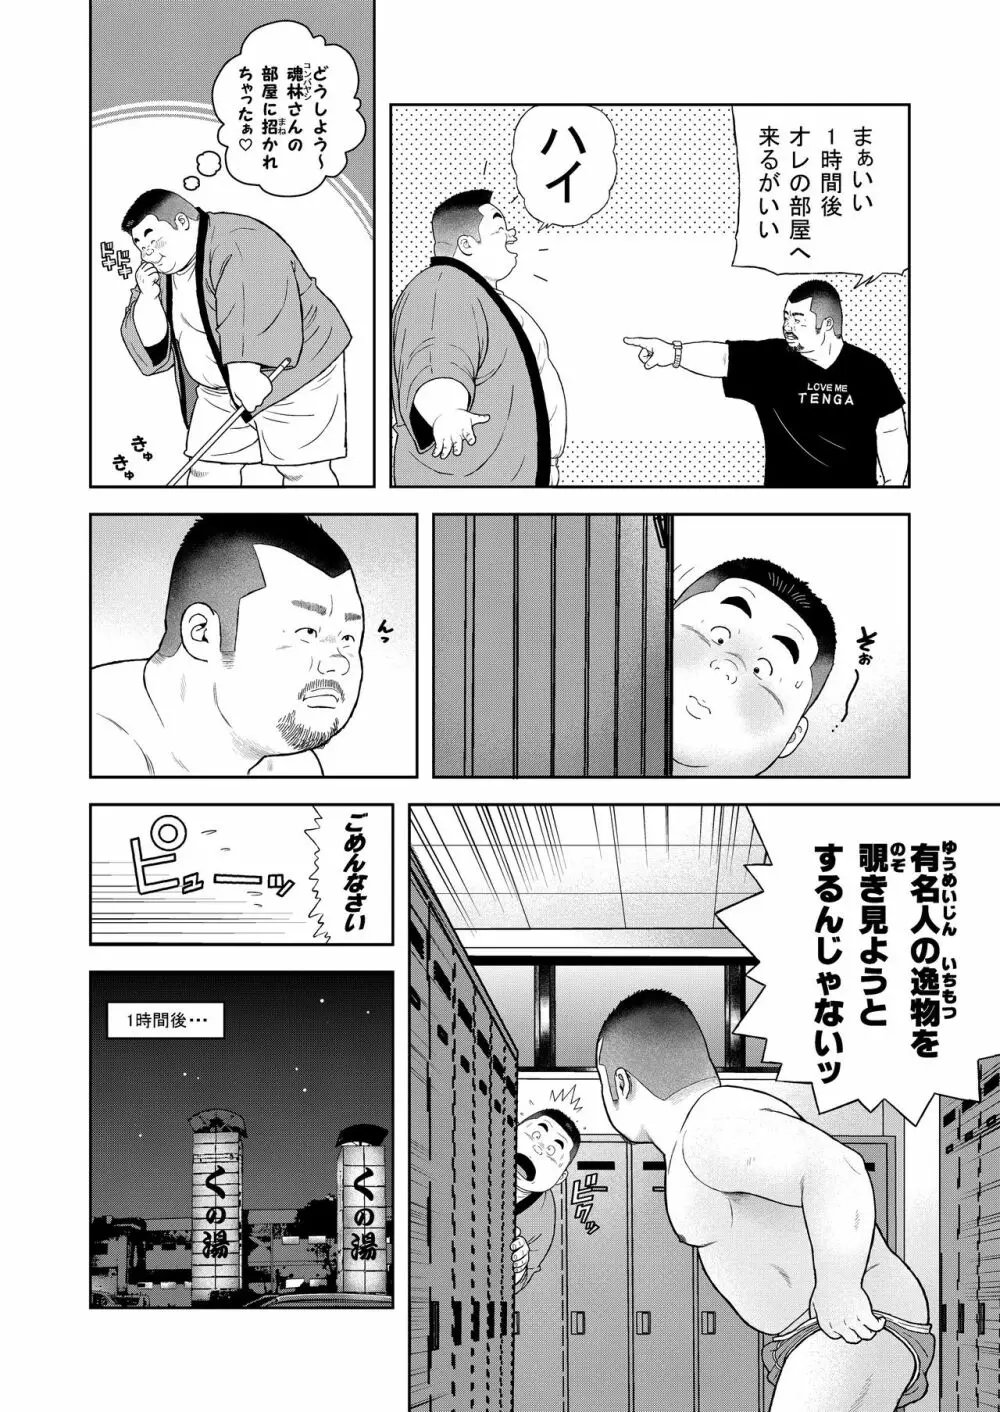 くの湯 四発め 芸人の性 - page6